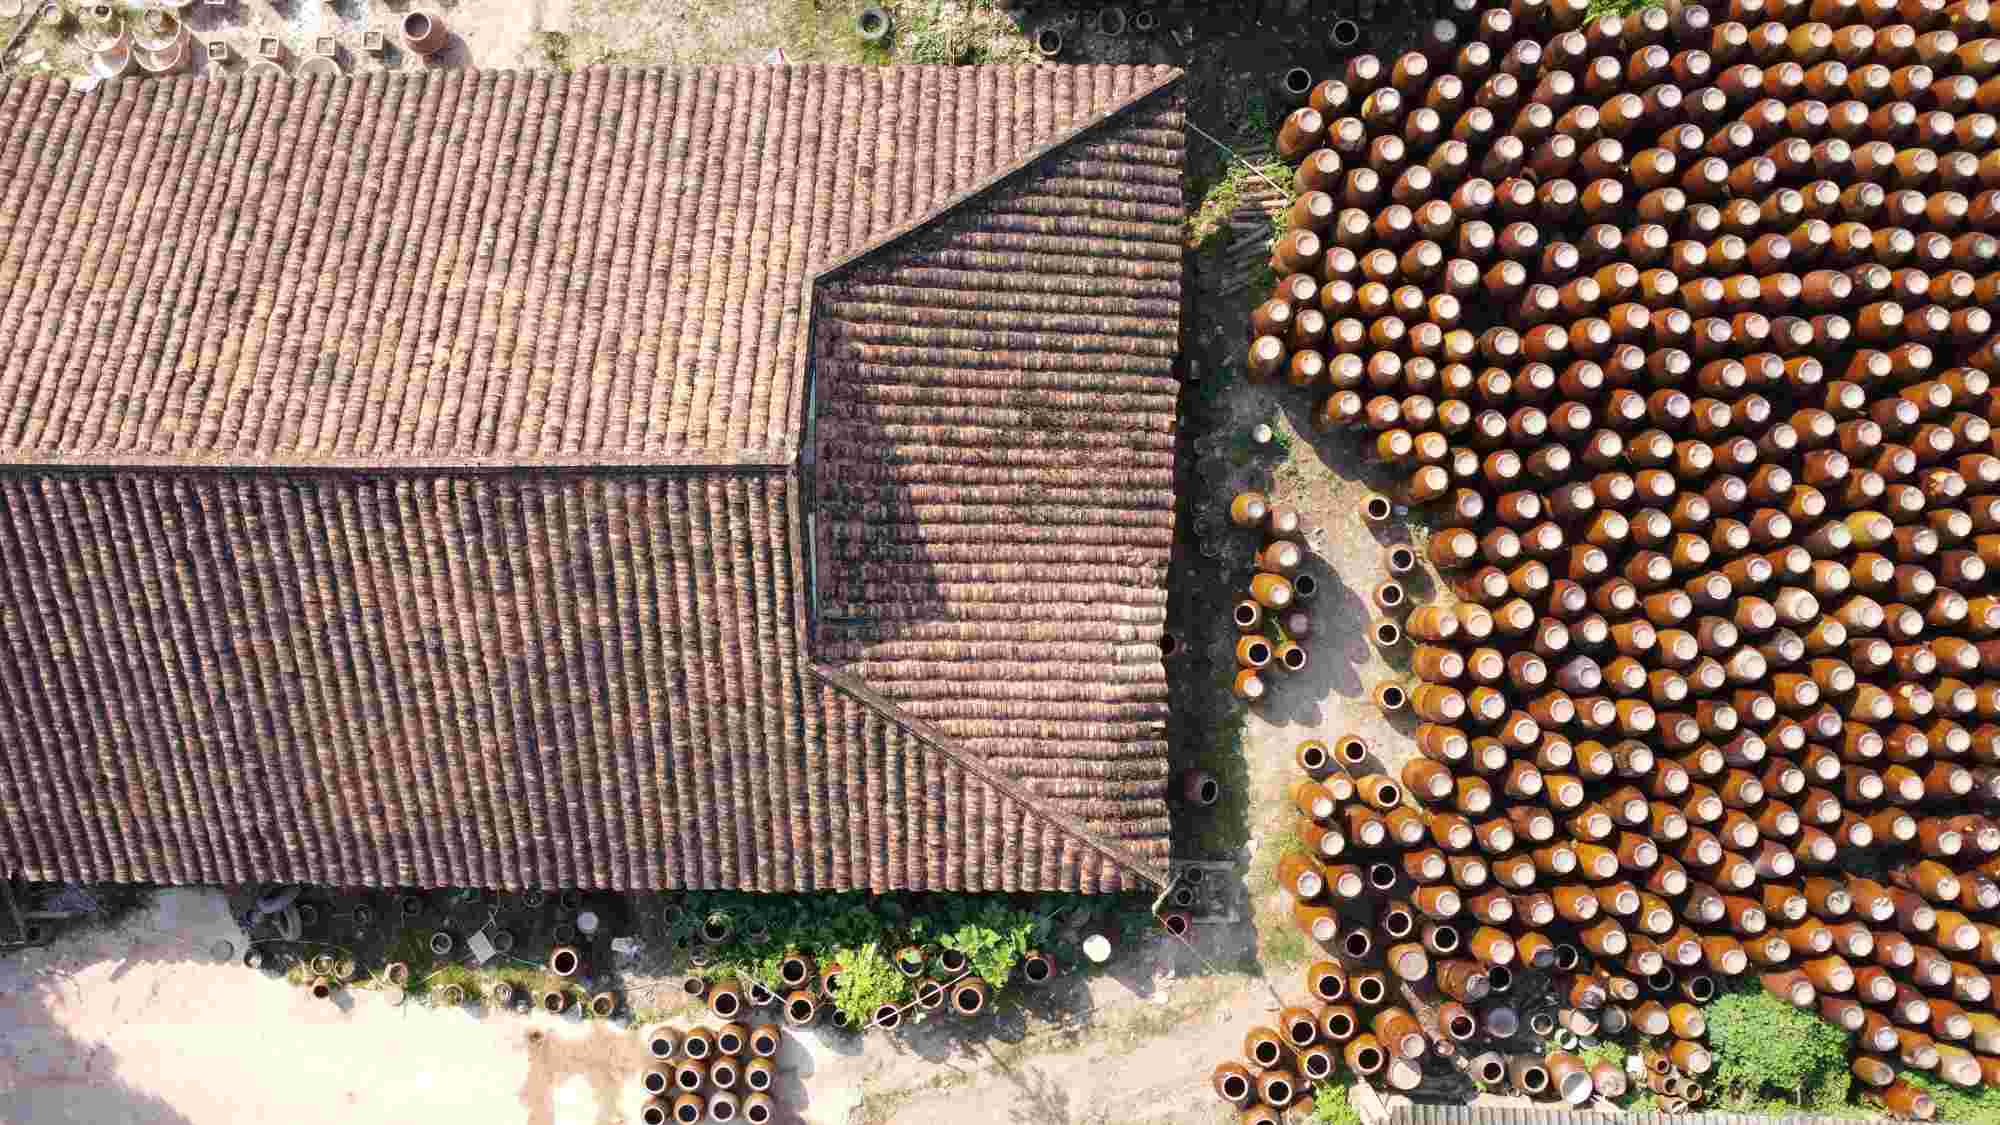 Đây là cơ sở sản xuất và bảo tồn nghề gốm cổ nhất đất Bình Dương với khoảng gần 180 năm tuổi.